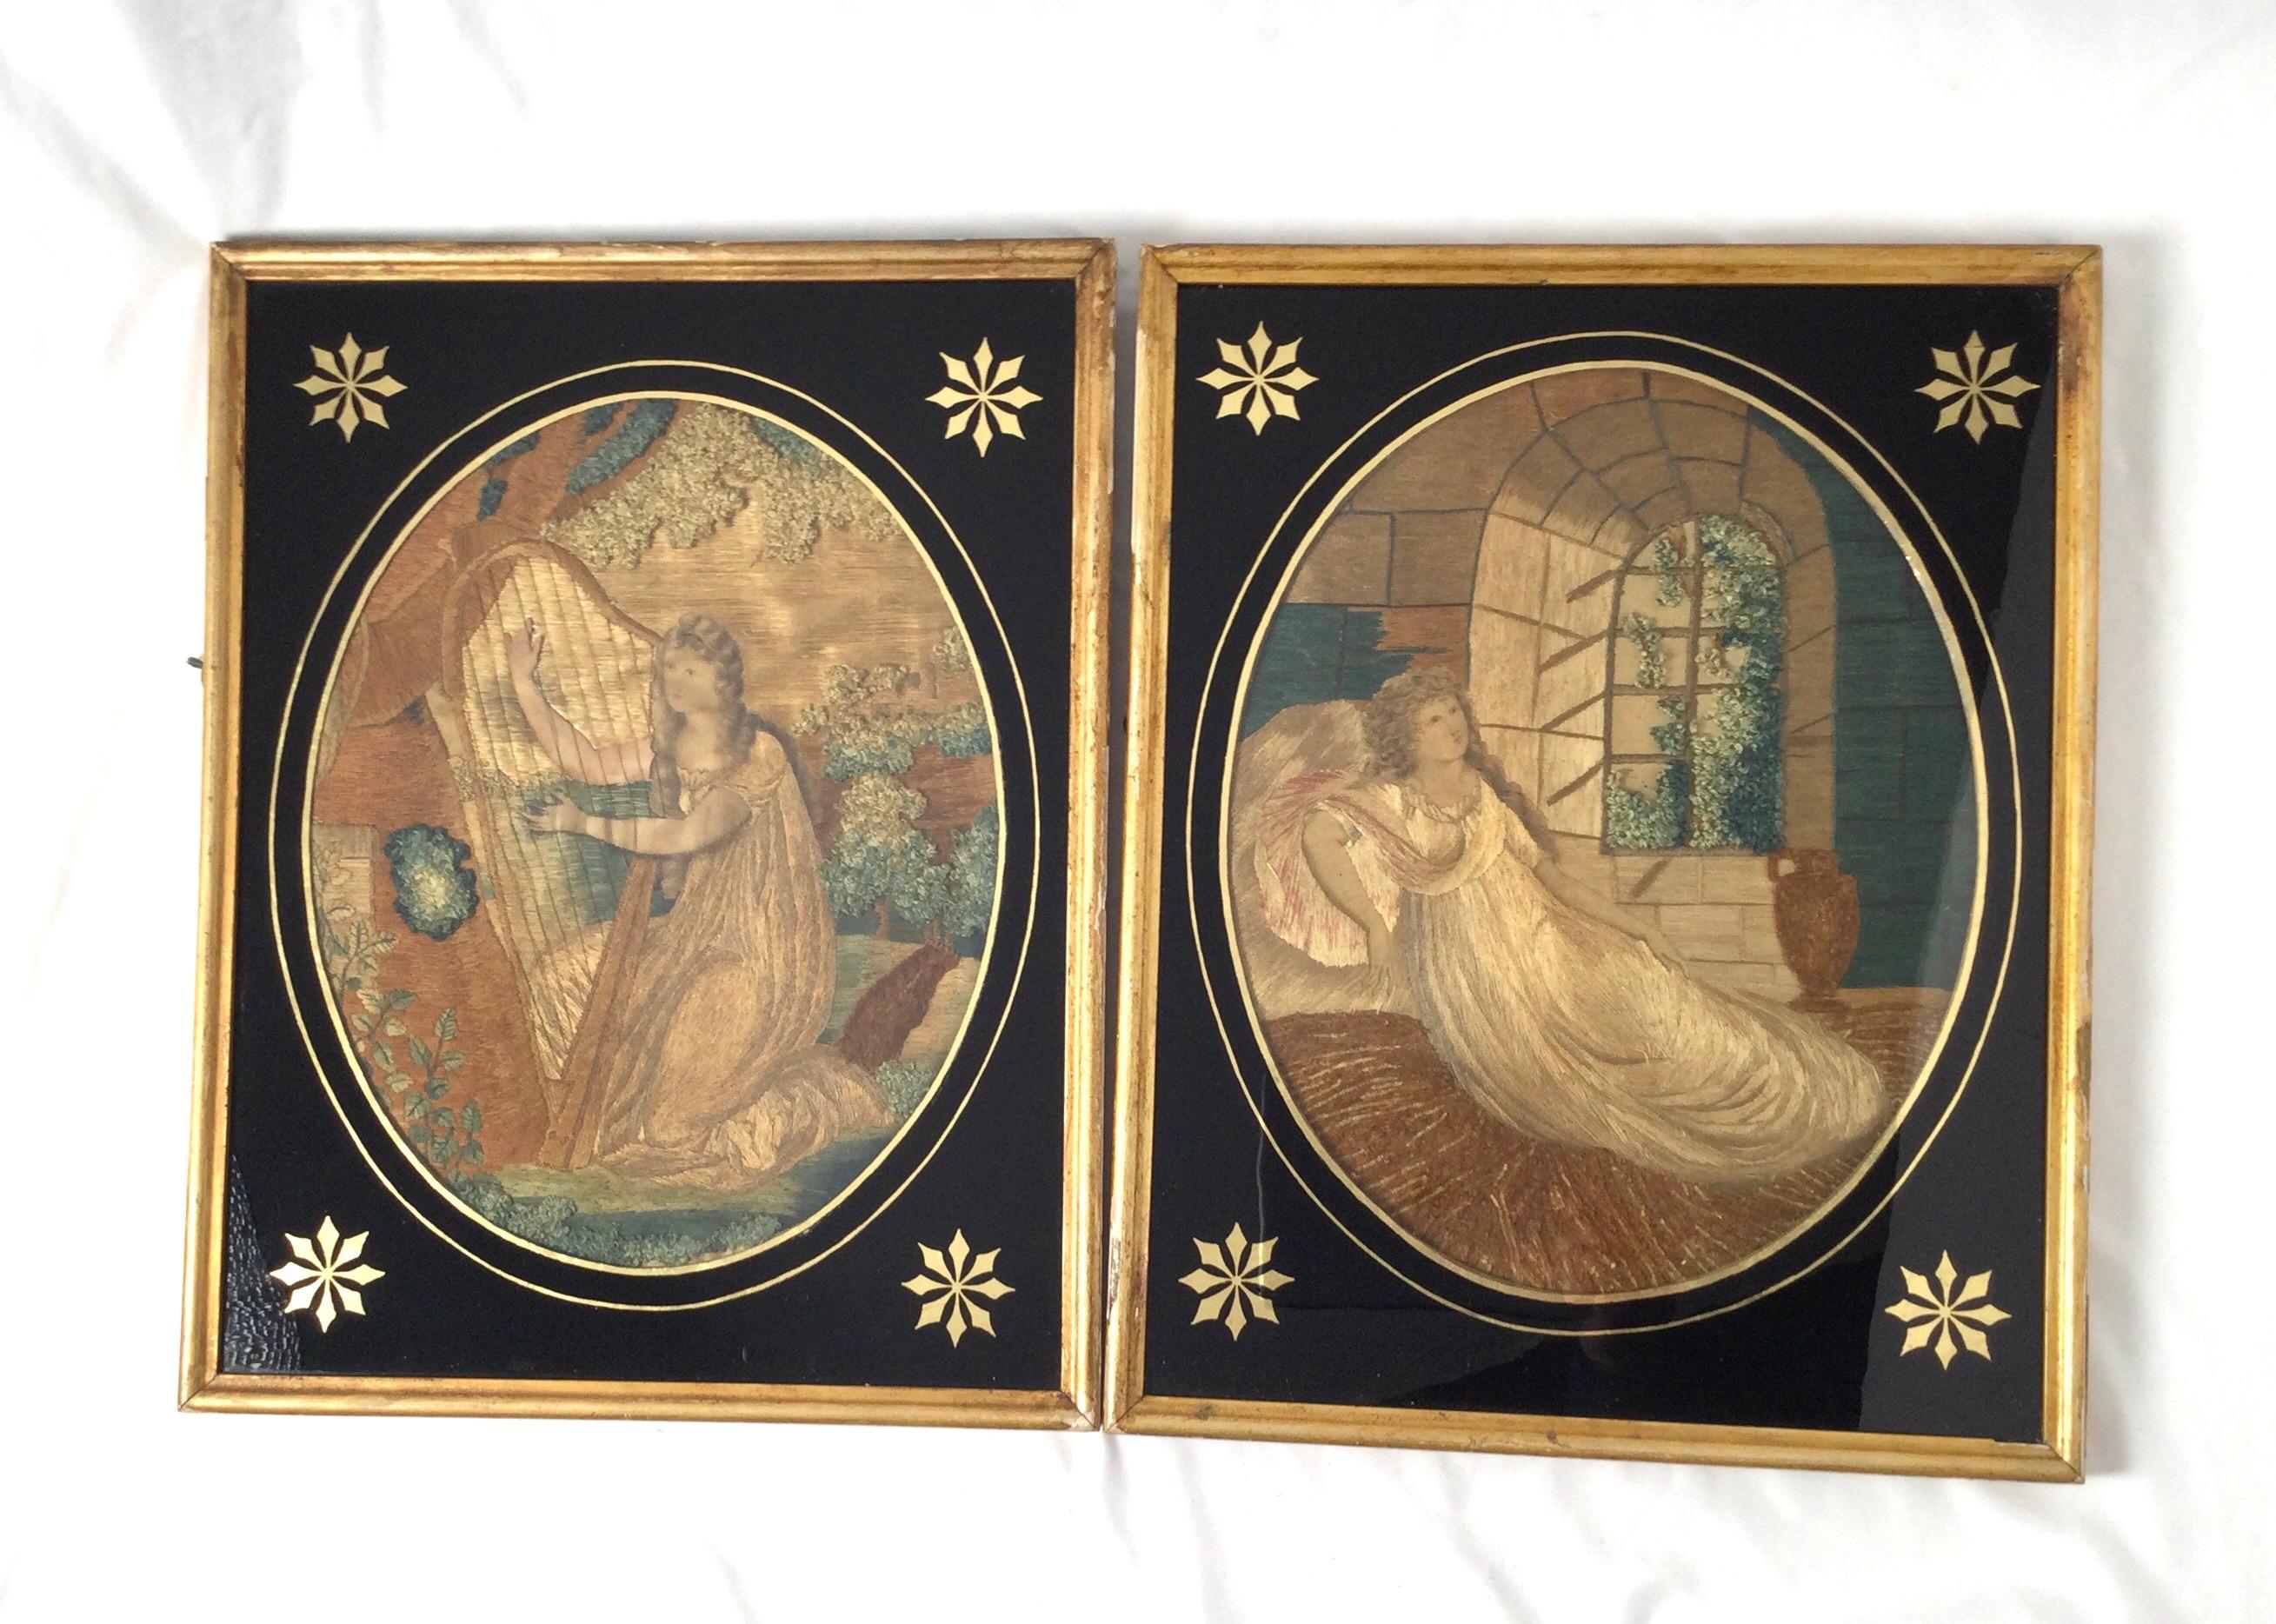 Paire de tableaux de deuil en soie brodés et peints à la main, d'époque Régence. Verre peint à l'envers en noir et or. Des soies extrêmement fines et bien détaillées. L'une des broderies représente une femme jouant de la harpe, l'autre une jeune